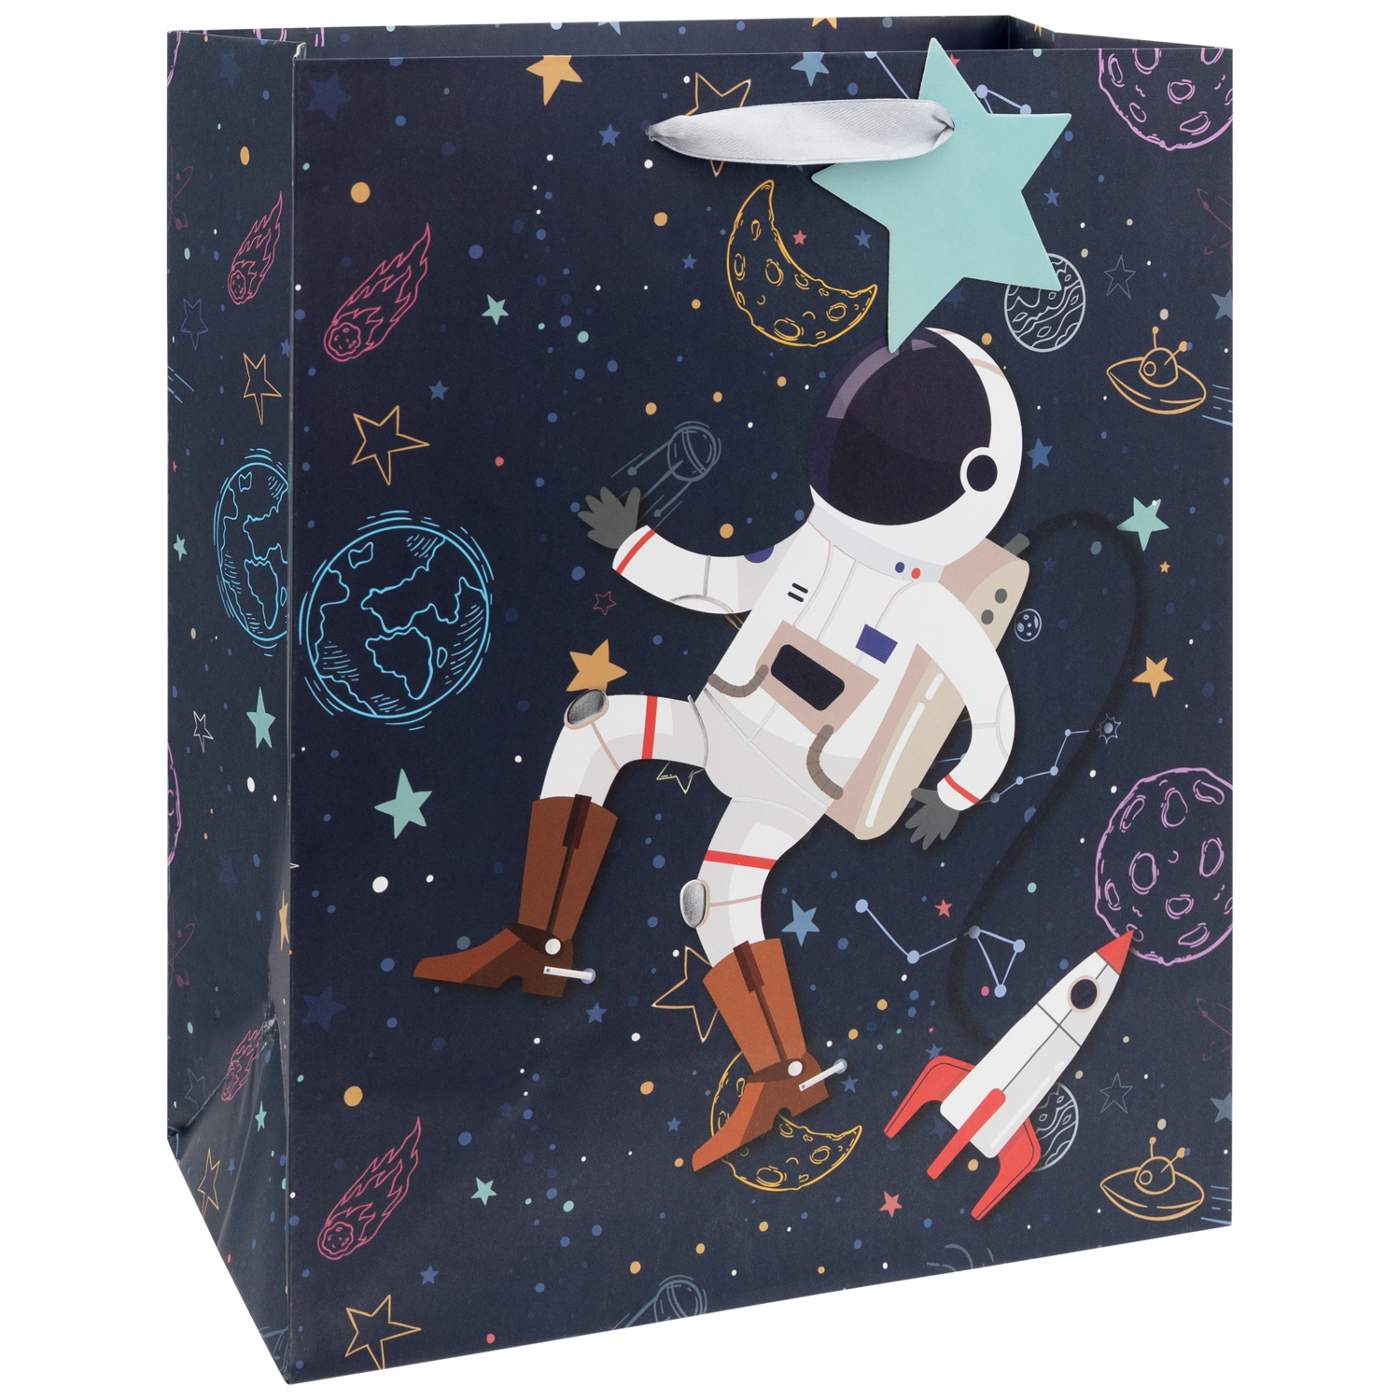 IG Design Space Cowboy Paper Gift Bag; image 2 of 2